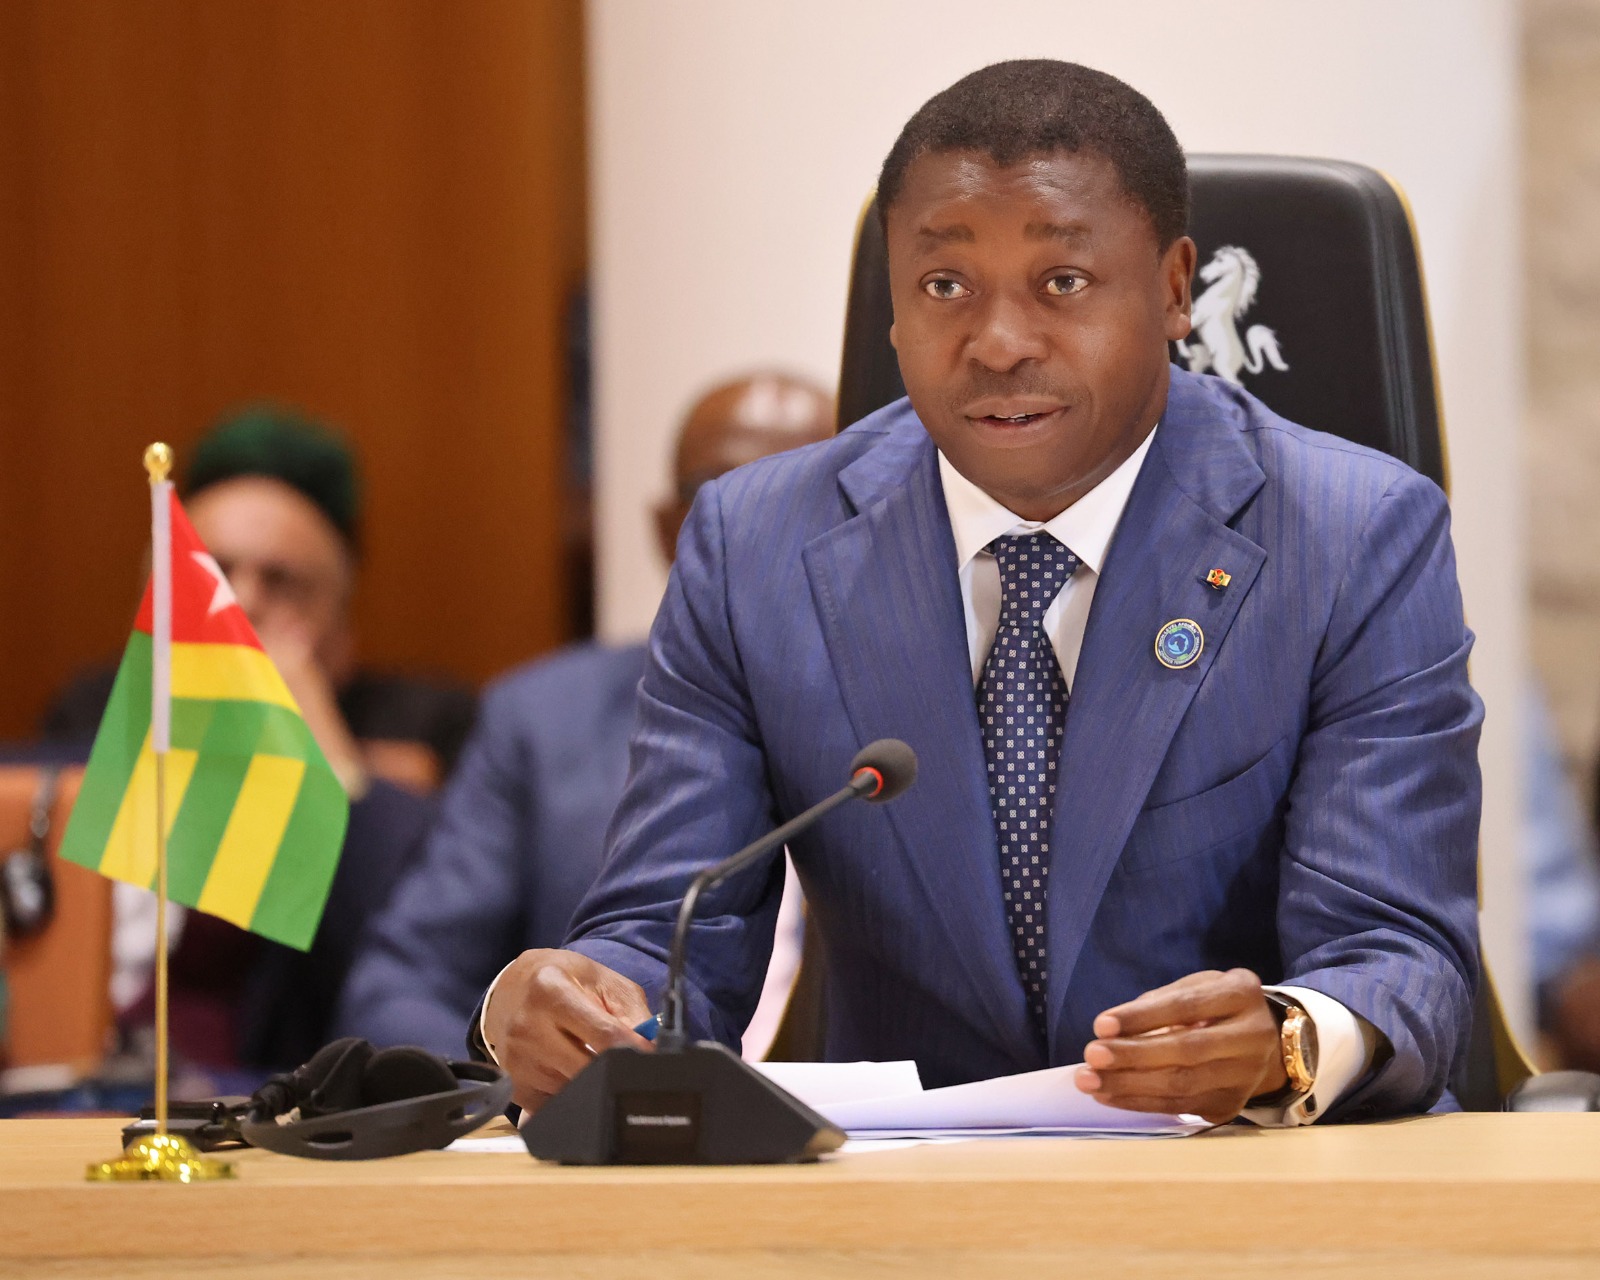 Le chef de l’Etat promulgue la nouvelle Constitution, le Togo est désormais dans la Vème République